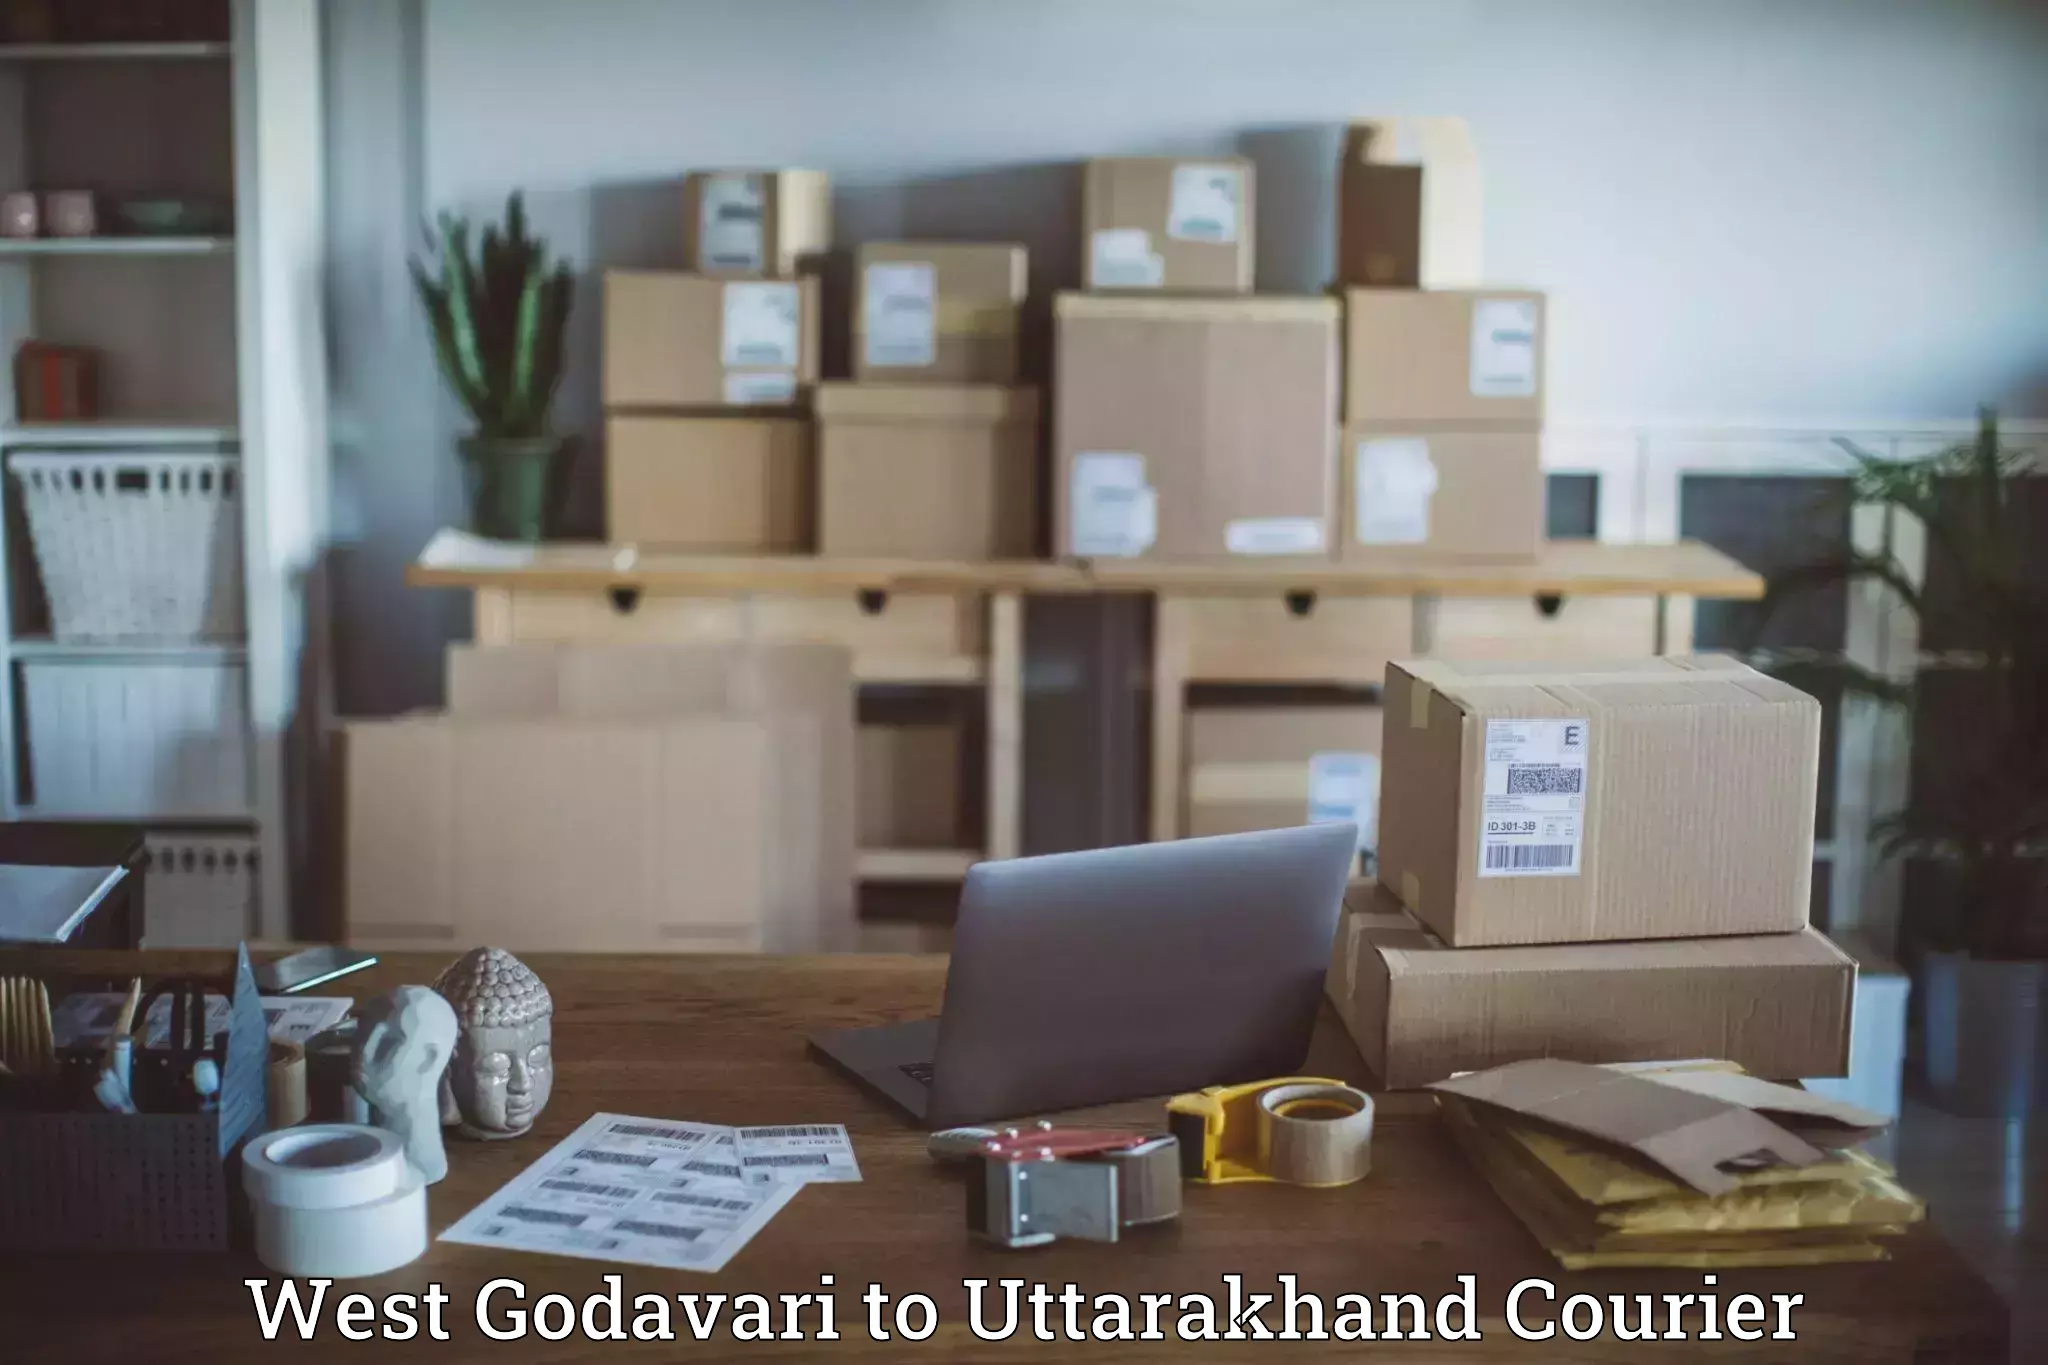 Express logistics providers West Godavari to Haridwar